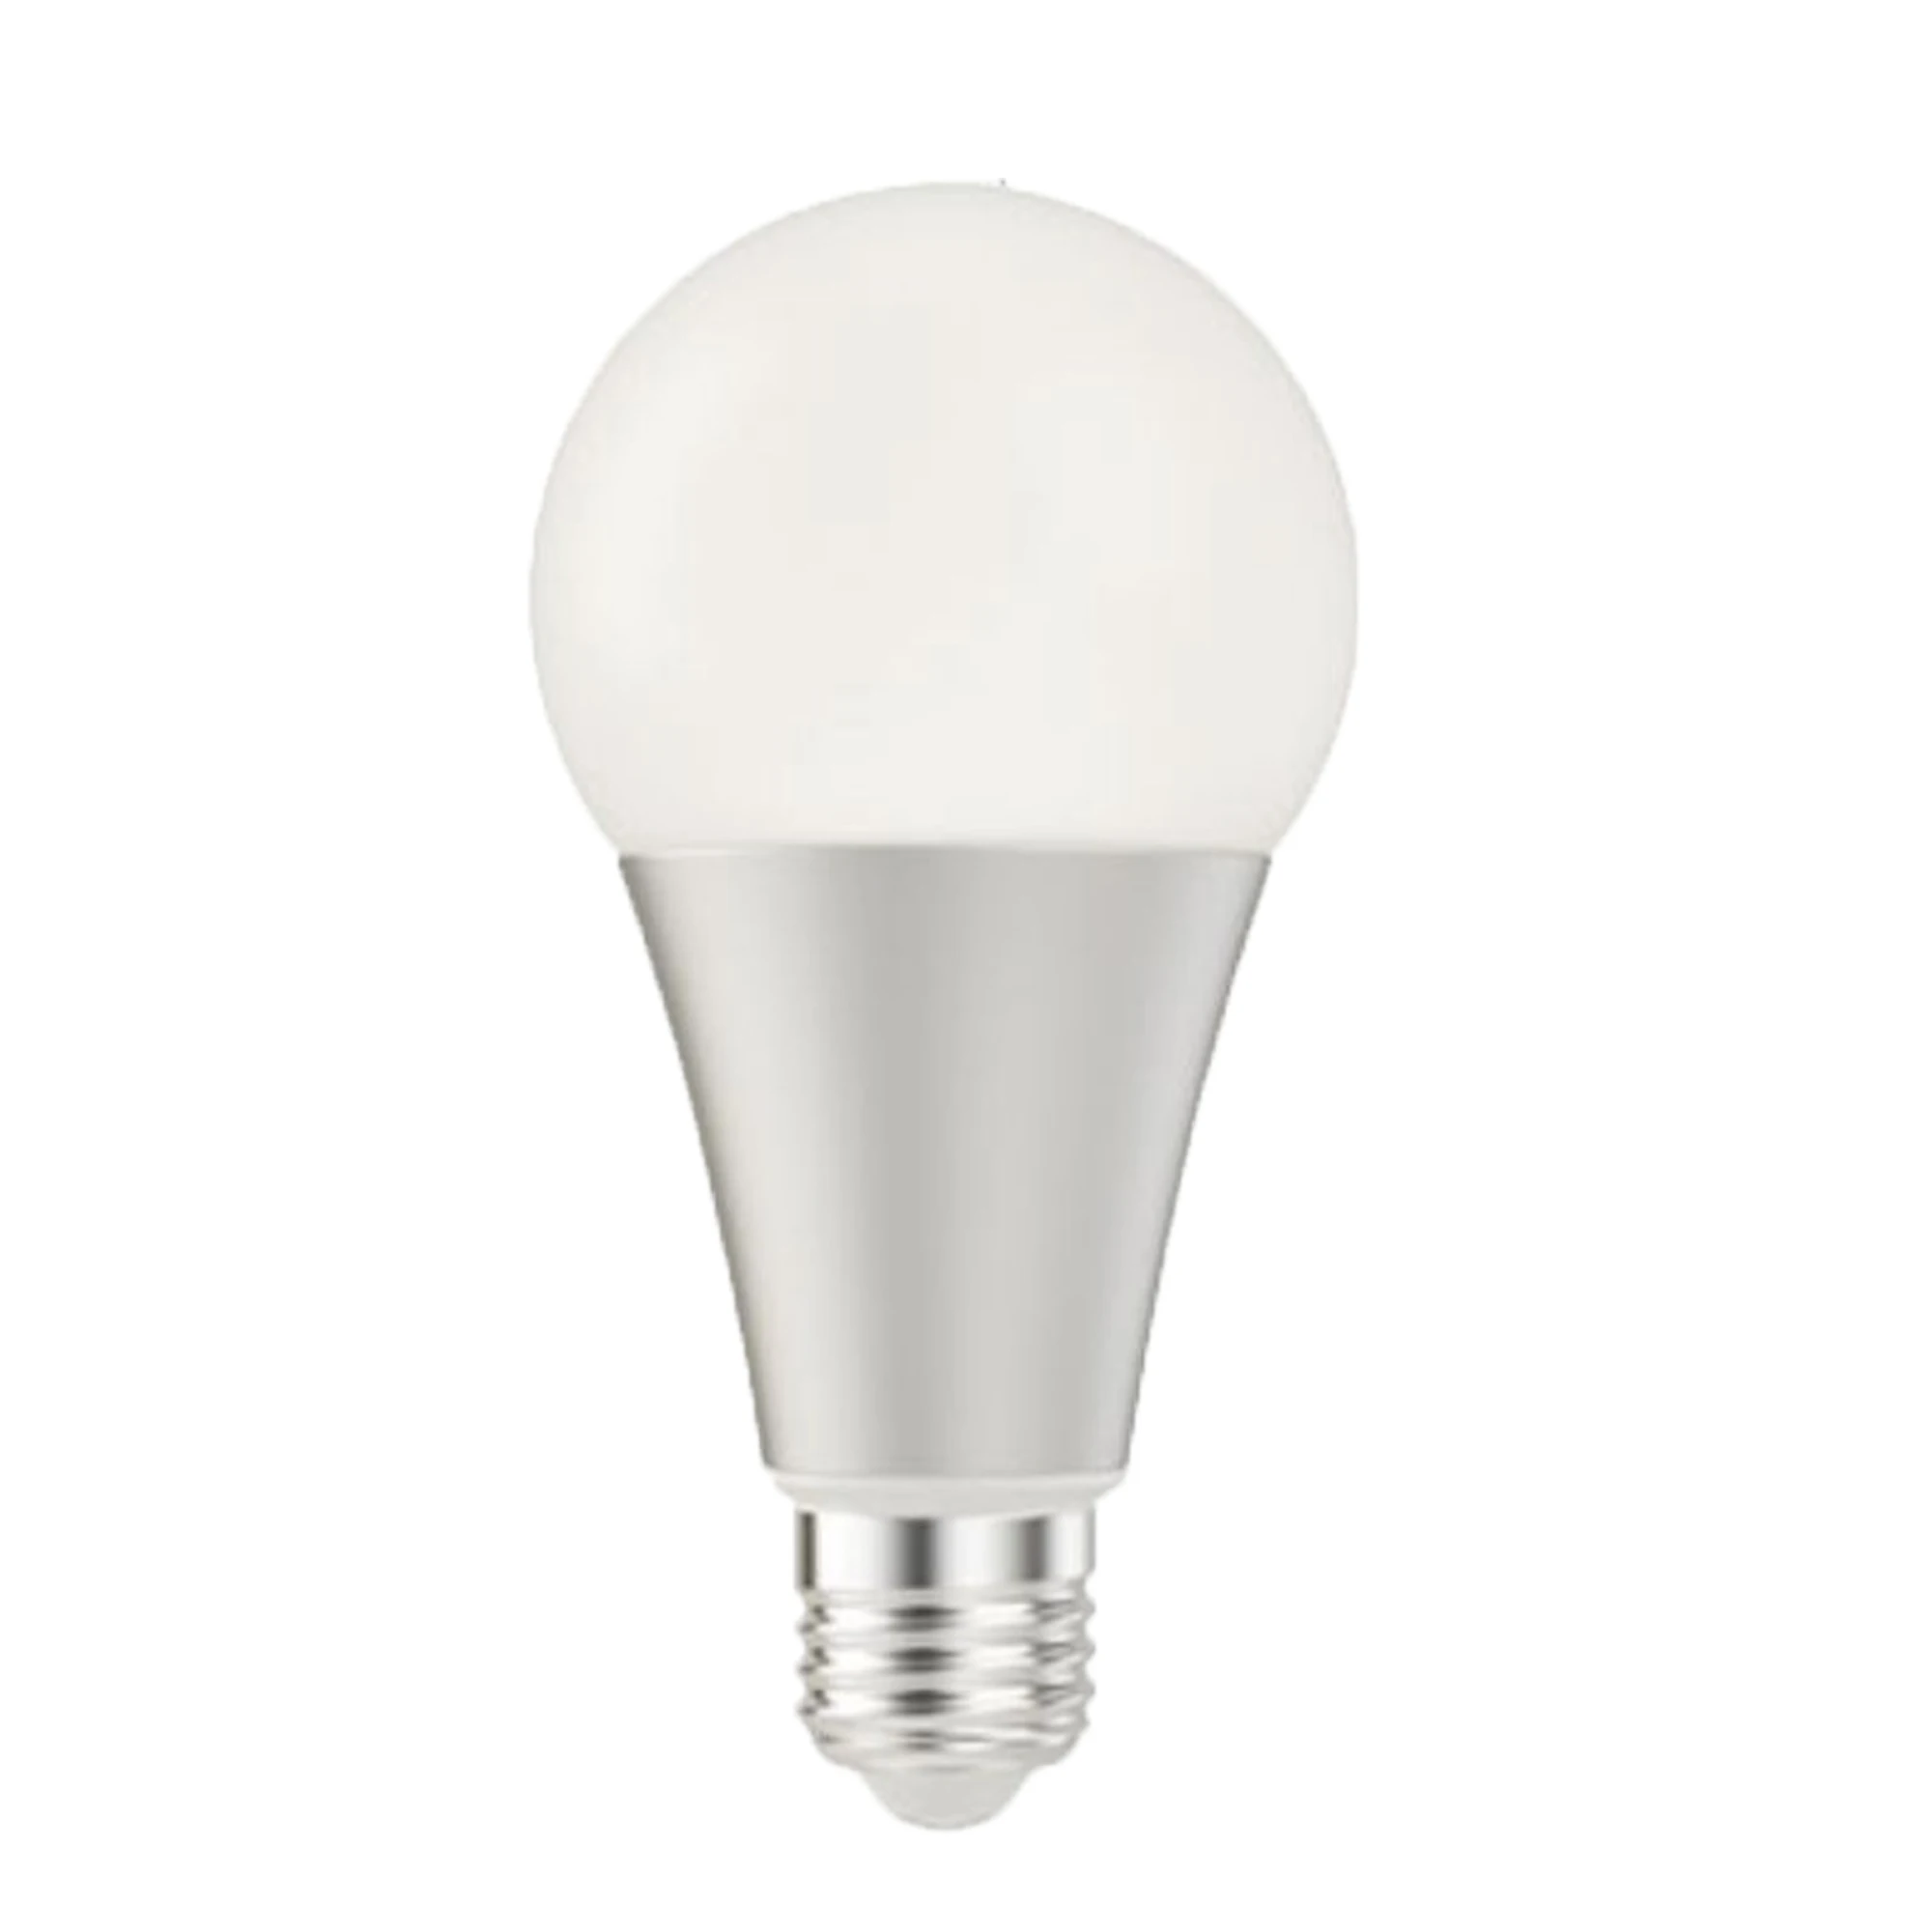 High CRI RA 95+ 6W AC220V E27 LED Blubs LED Lamp Light Full Spectrum  Natural White 4000K 500-600lm for Home Deco Room Kitchen AliExpress